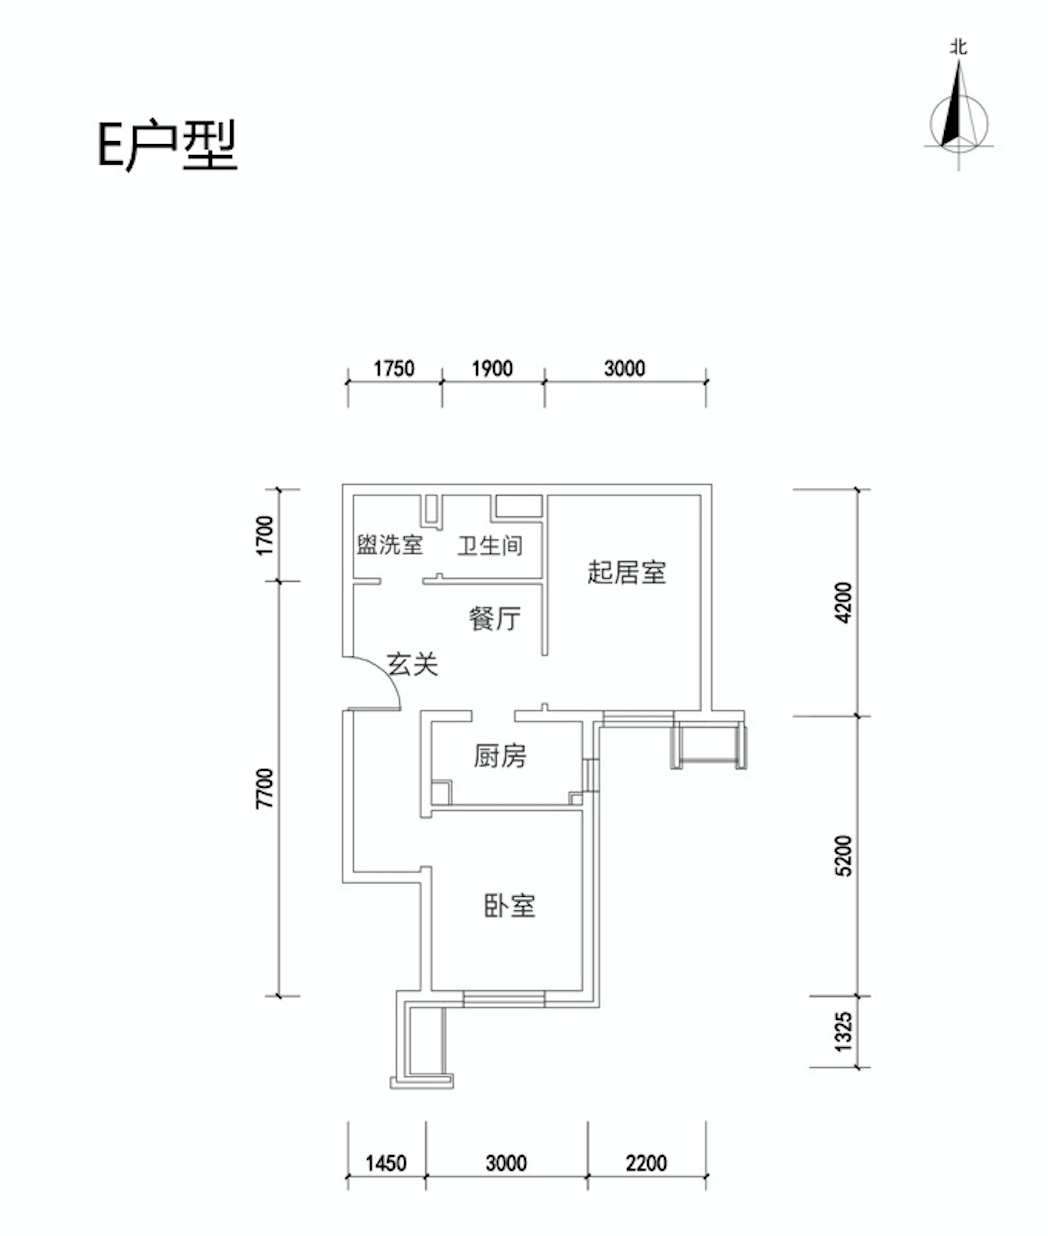 北京大兴区四季盛景园共有产权住房将于10月15日开始申购登记9